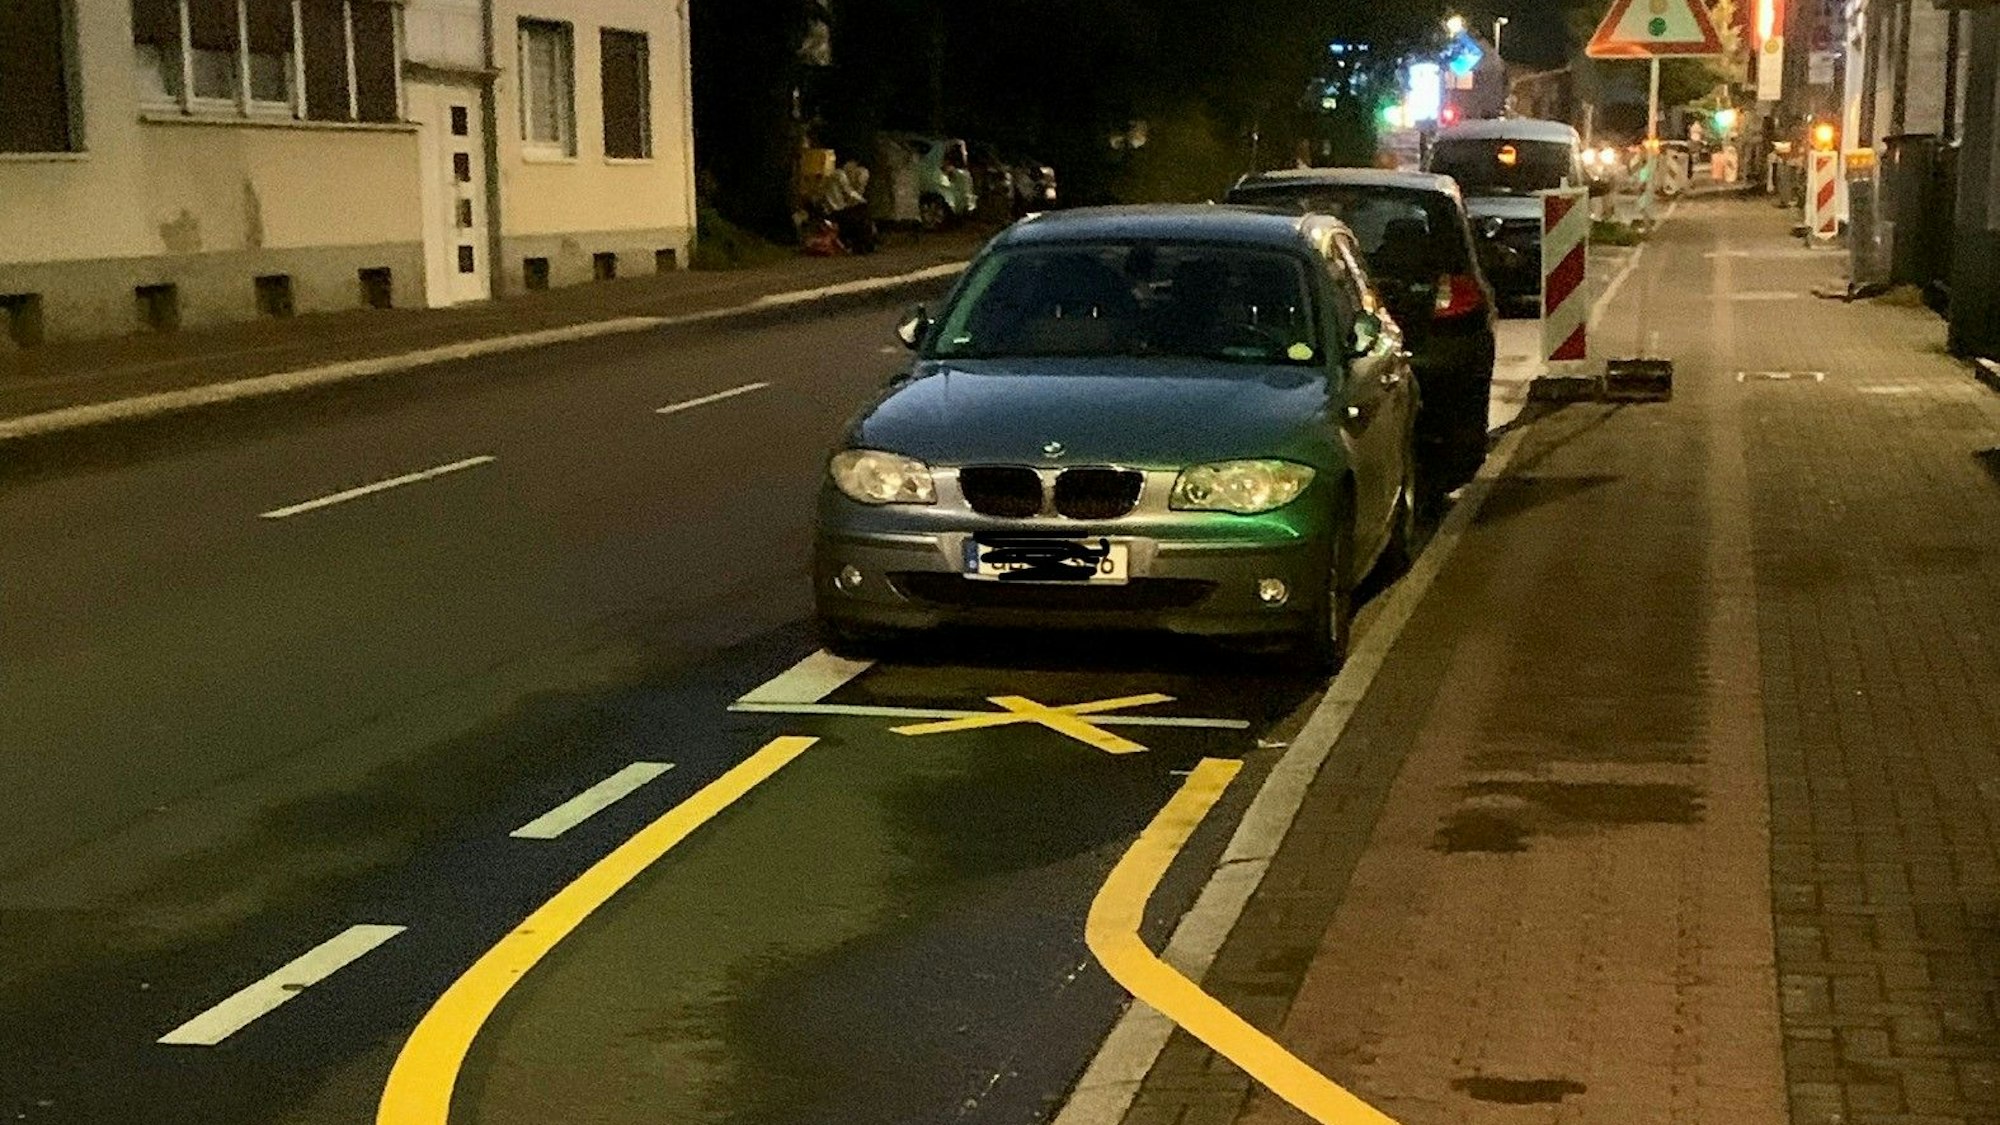 Zwei Autos parken auf dem Parkstreifen, obwohl ein gelbes X darauf hinweist, dass sie dort nicht stehen dürfen.